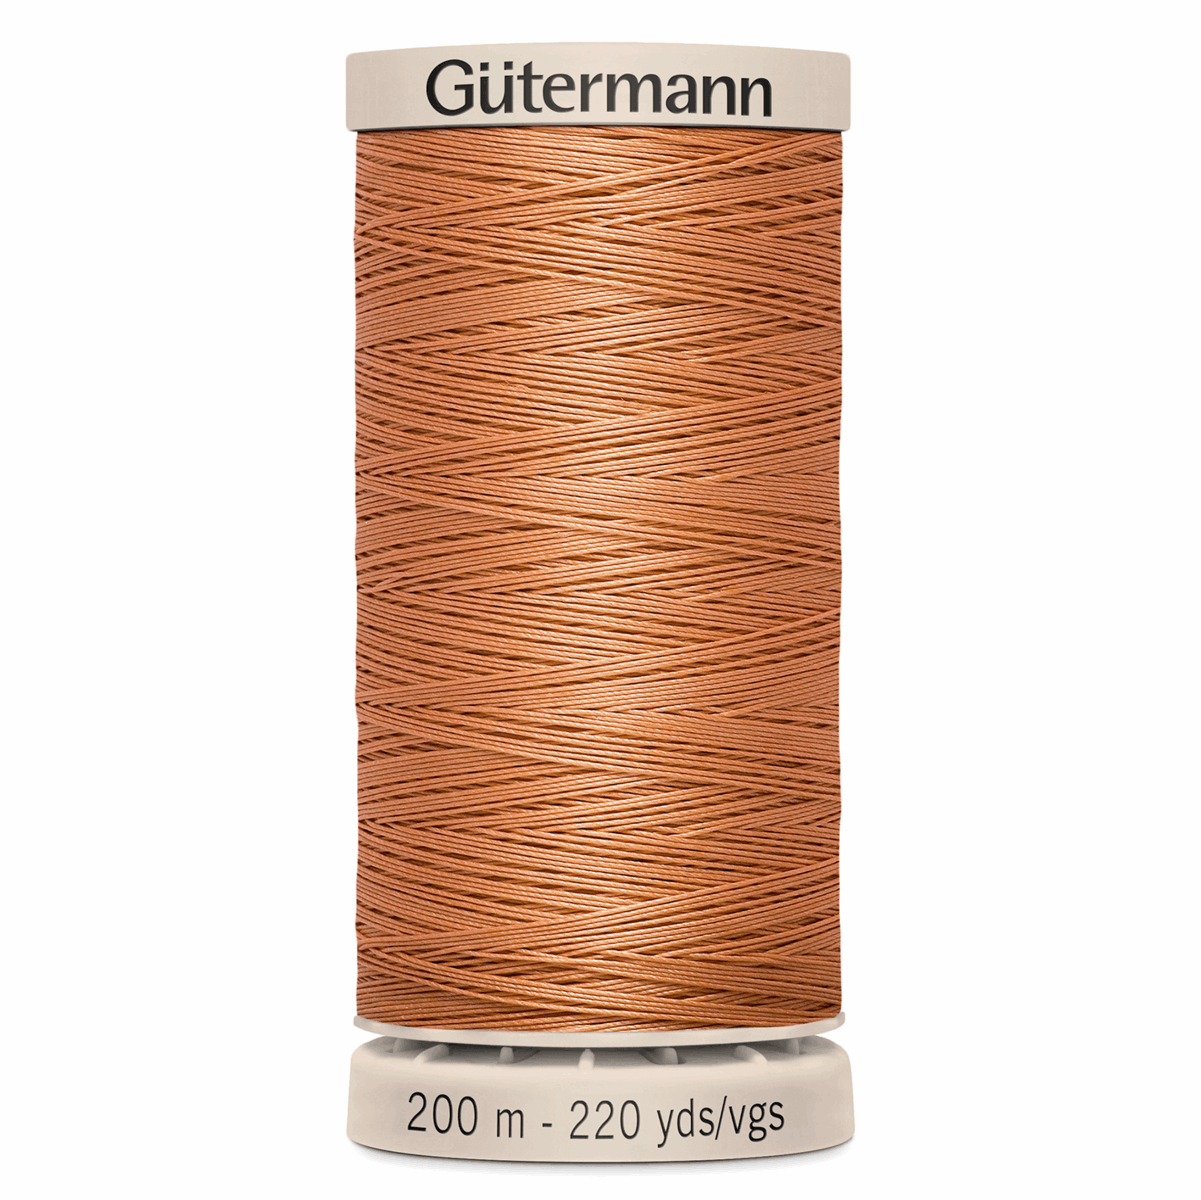 Gutermann Quilting Thread 200m - Colour 2045